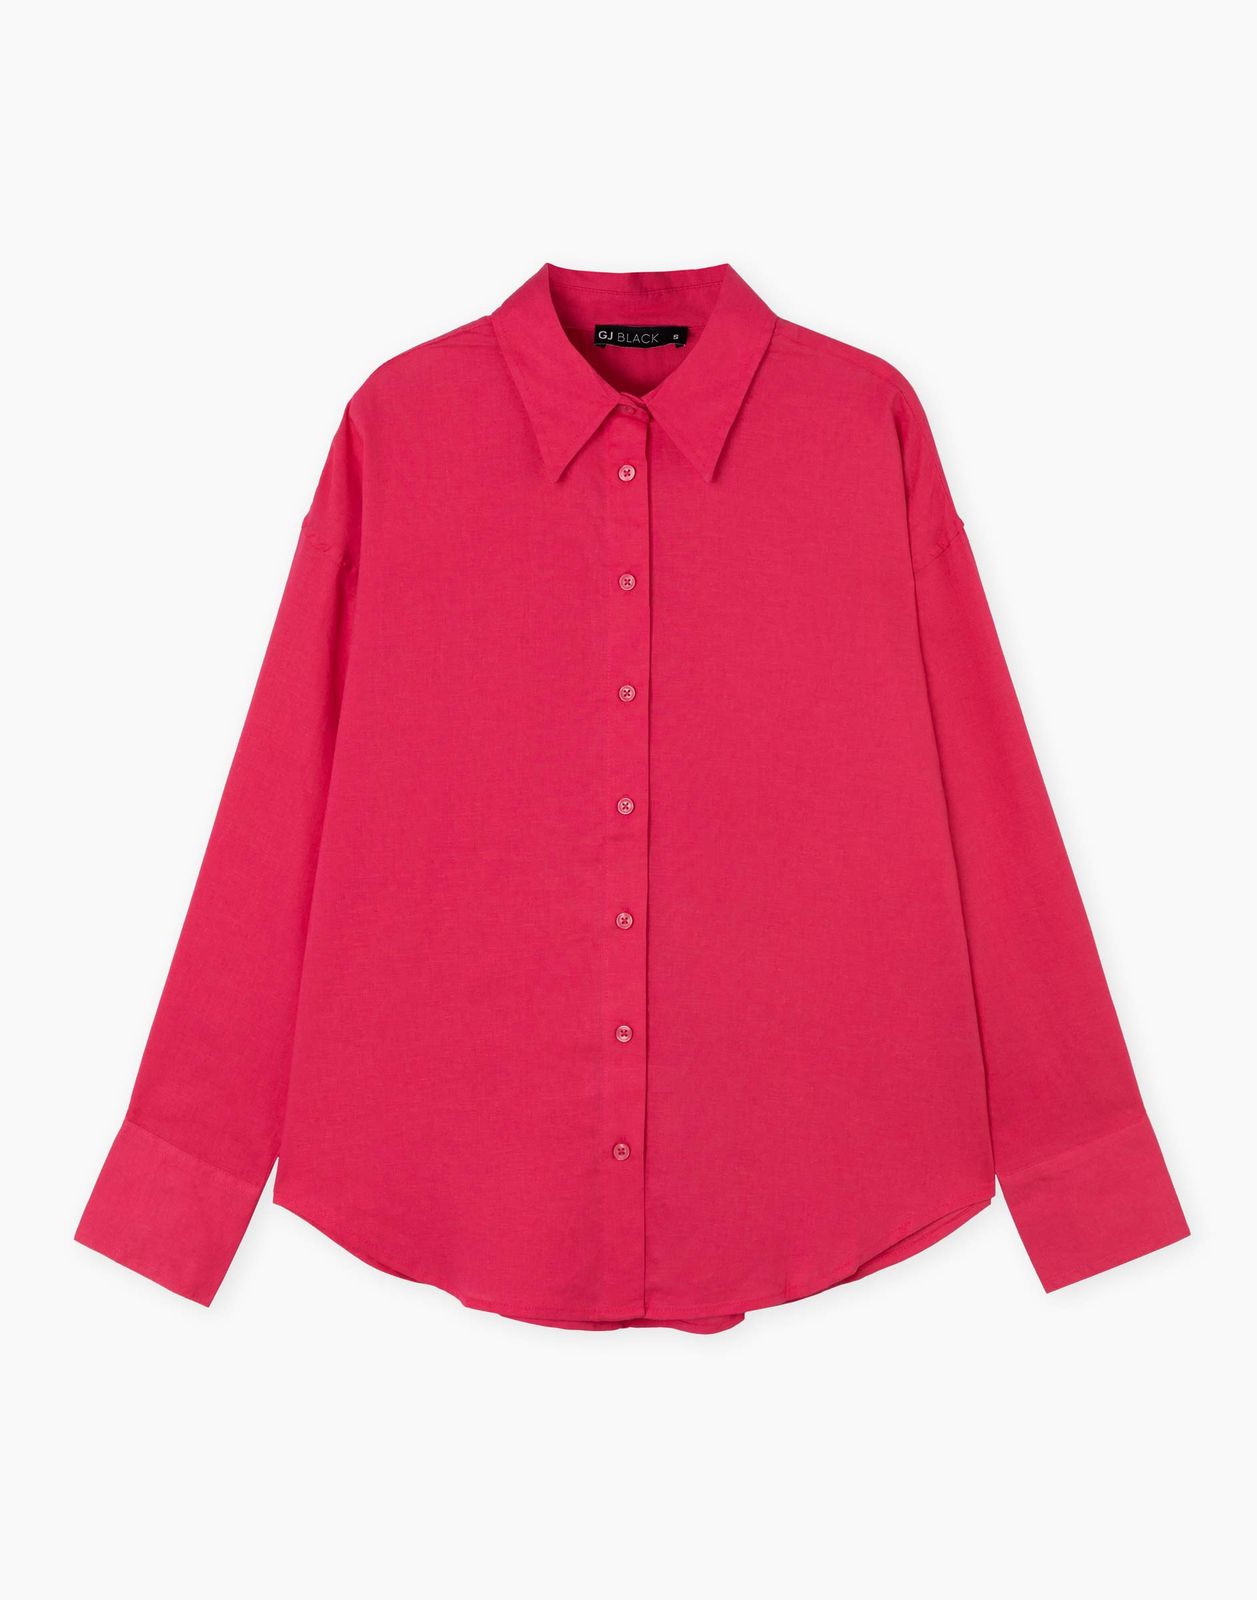 Рубашка женская Gloria Jeans GWT003851 розовый XXS/158